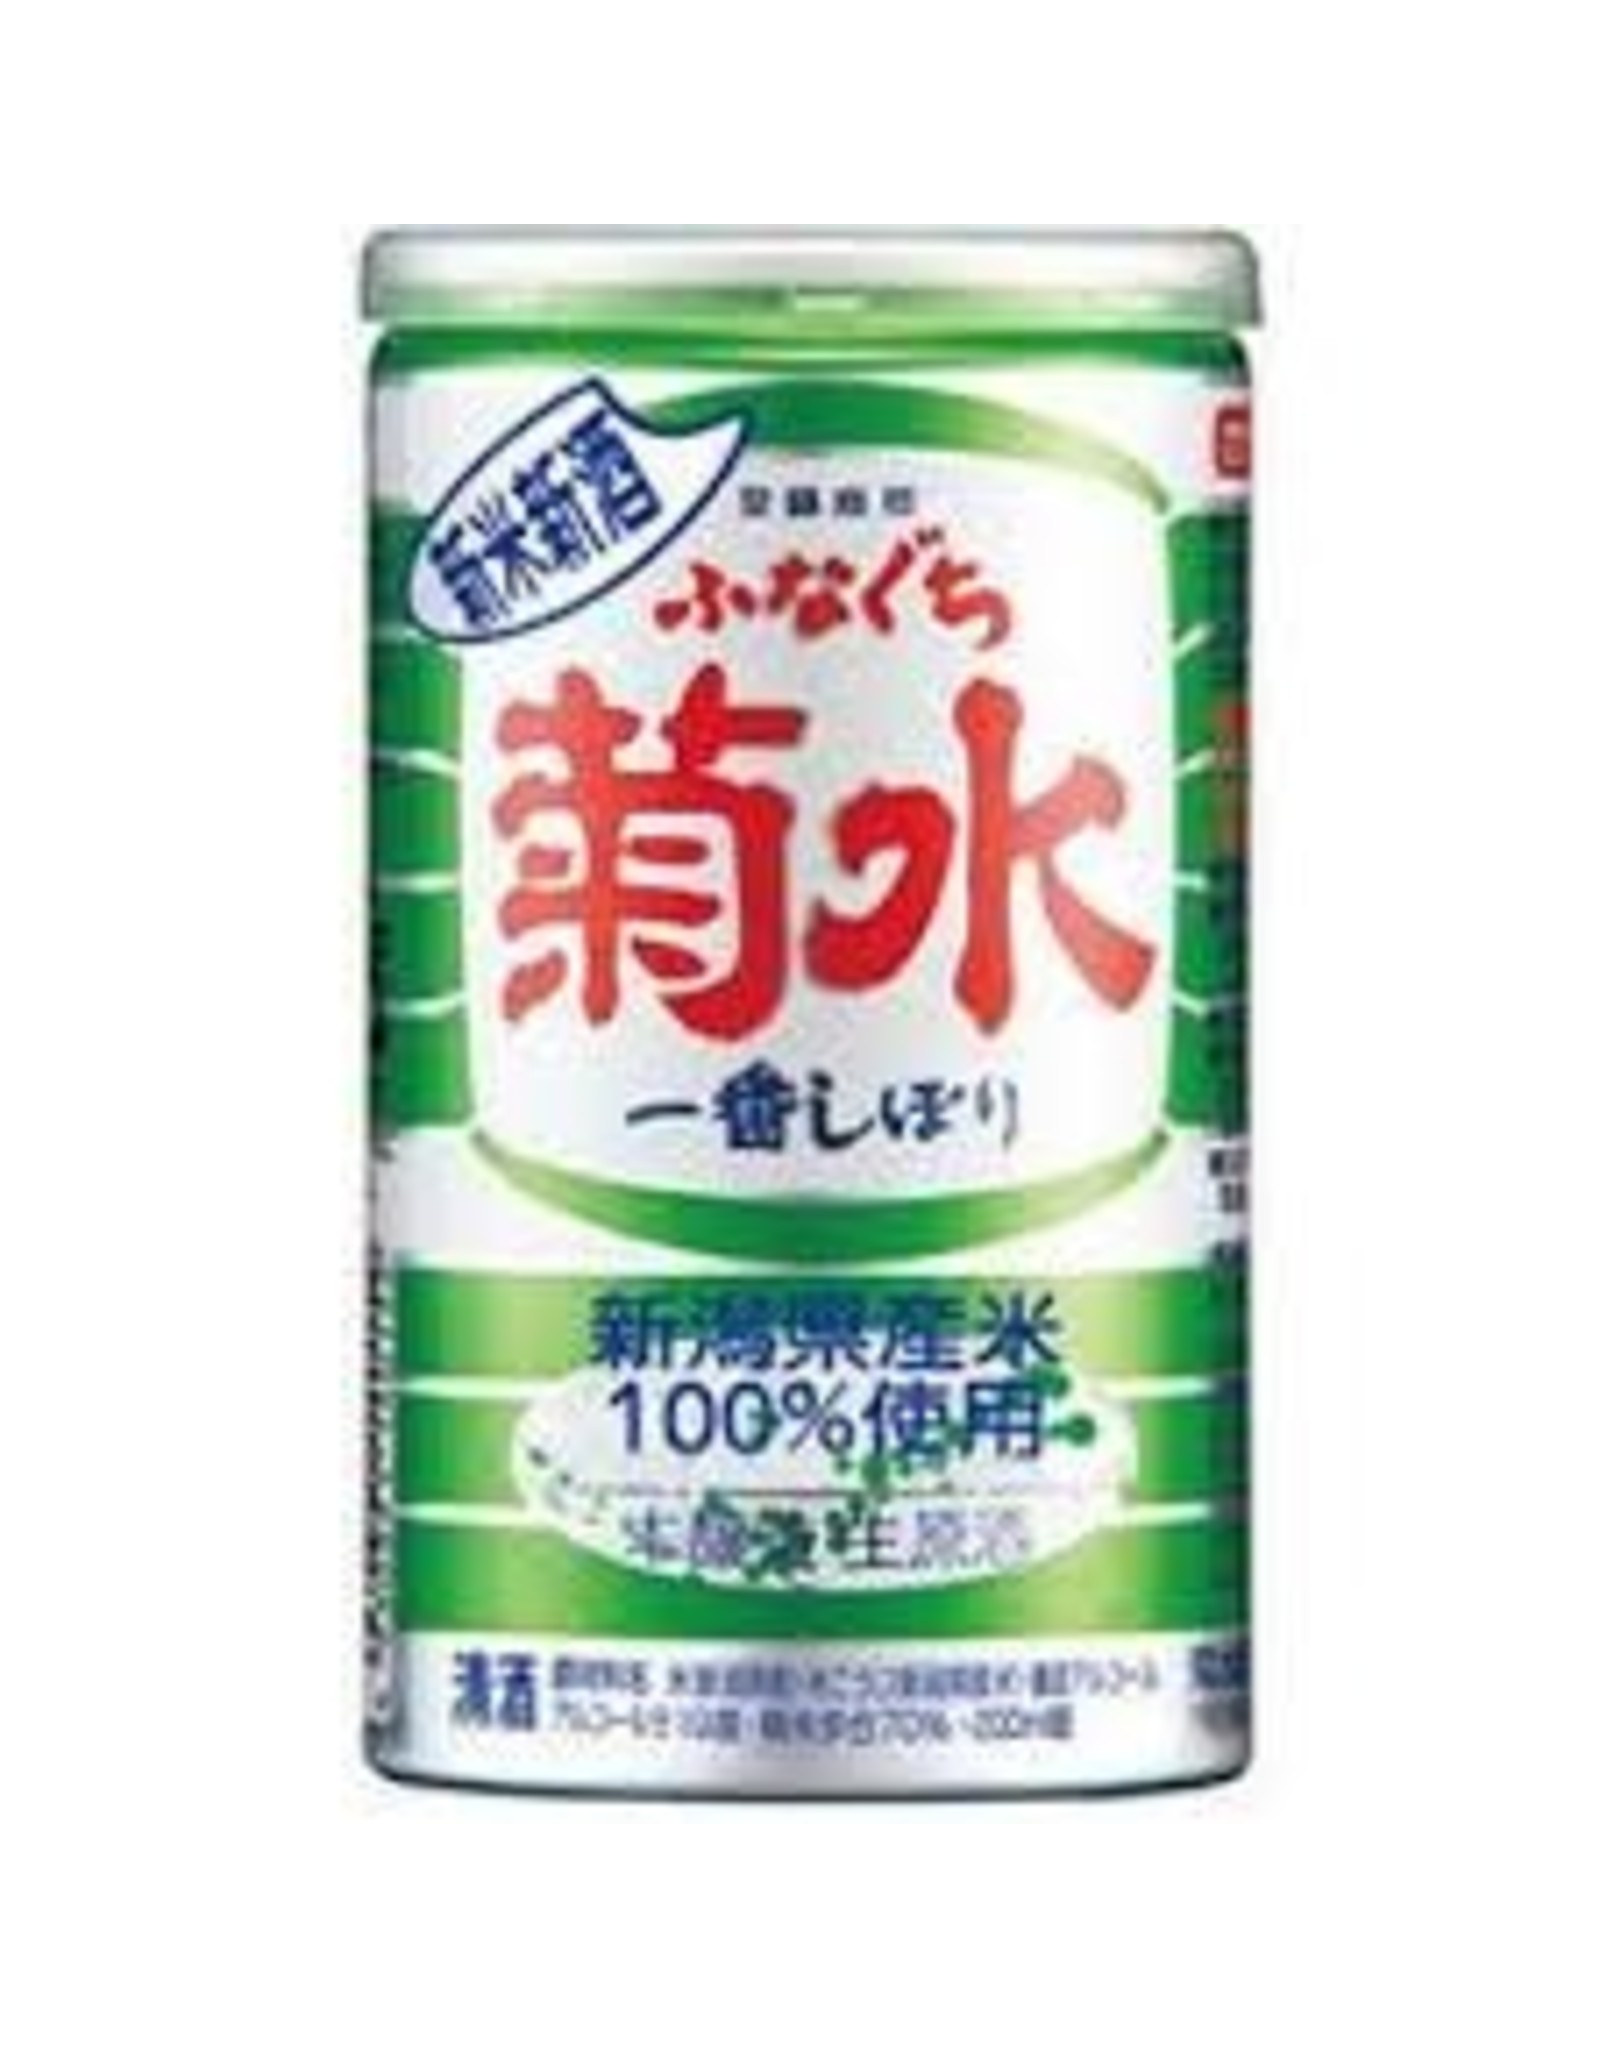 Shinmai Shinshu Funaguchi Kikusui NV  (200 ml Can)